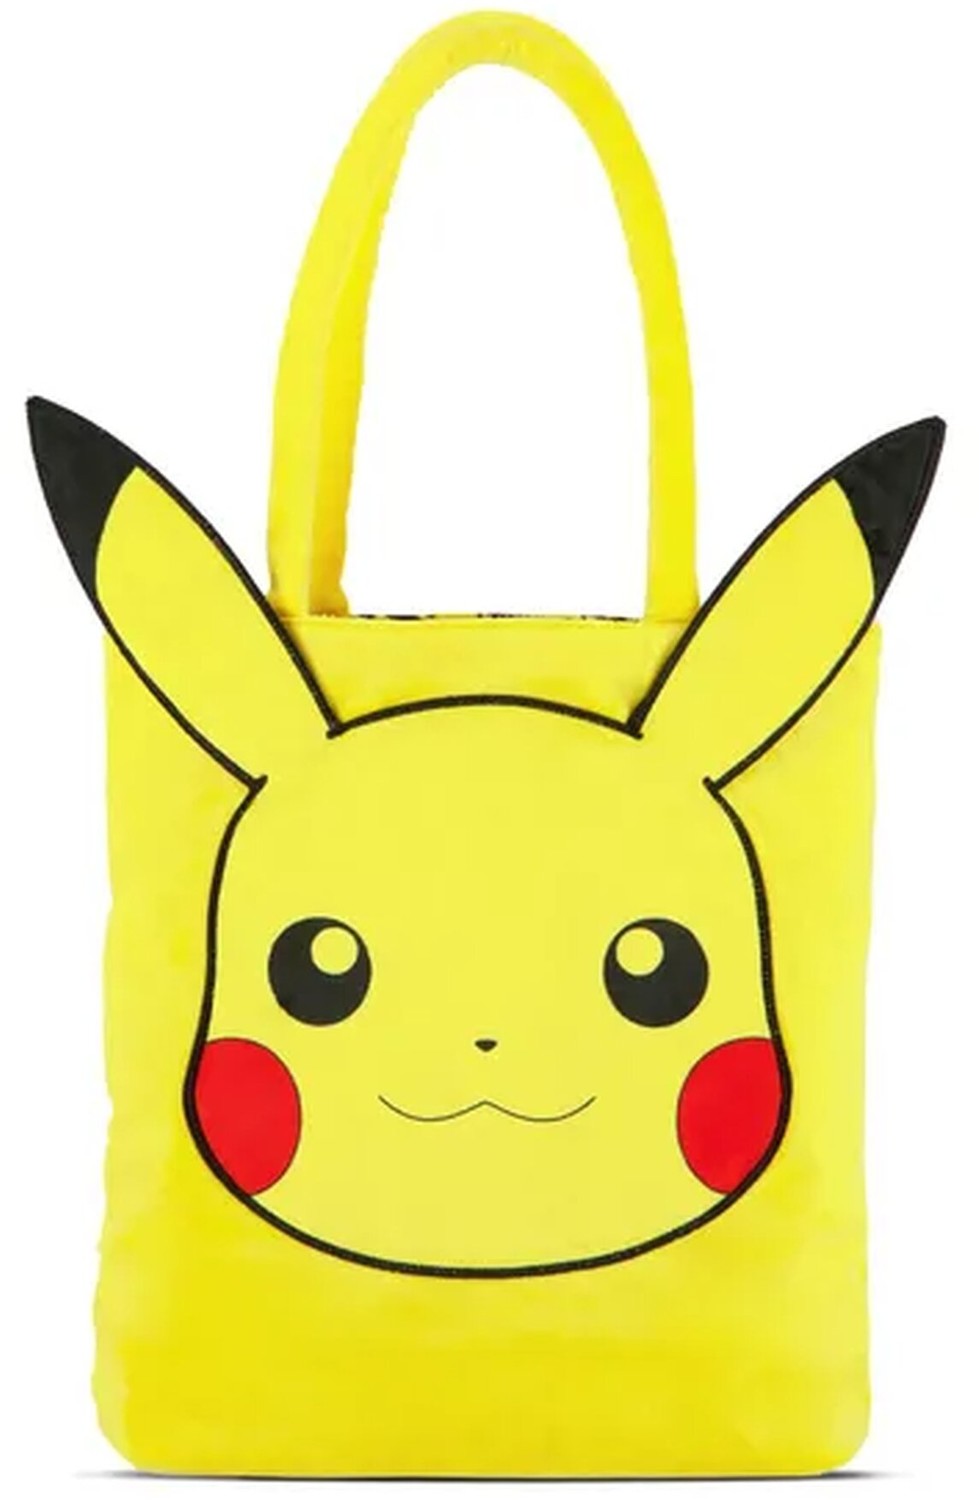 Taška Pokémon - Pikachu, plyšová - 08718526176377